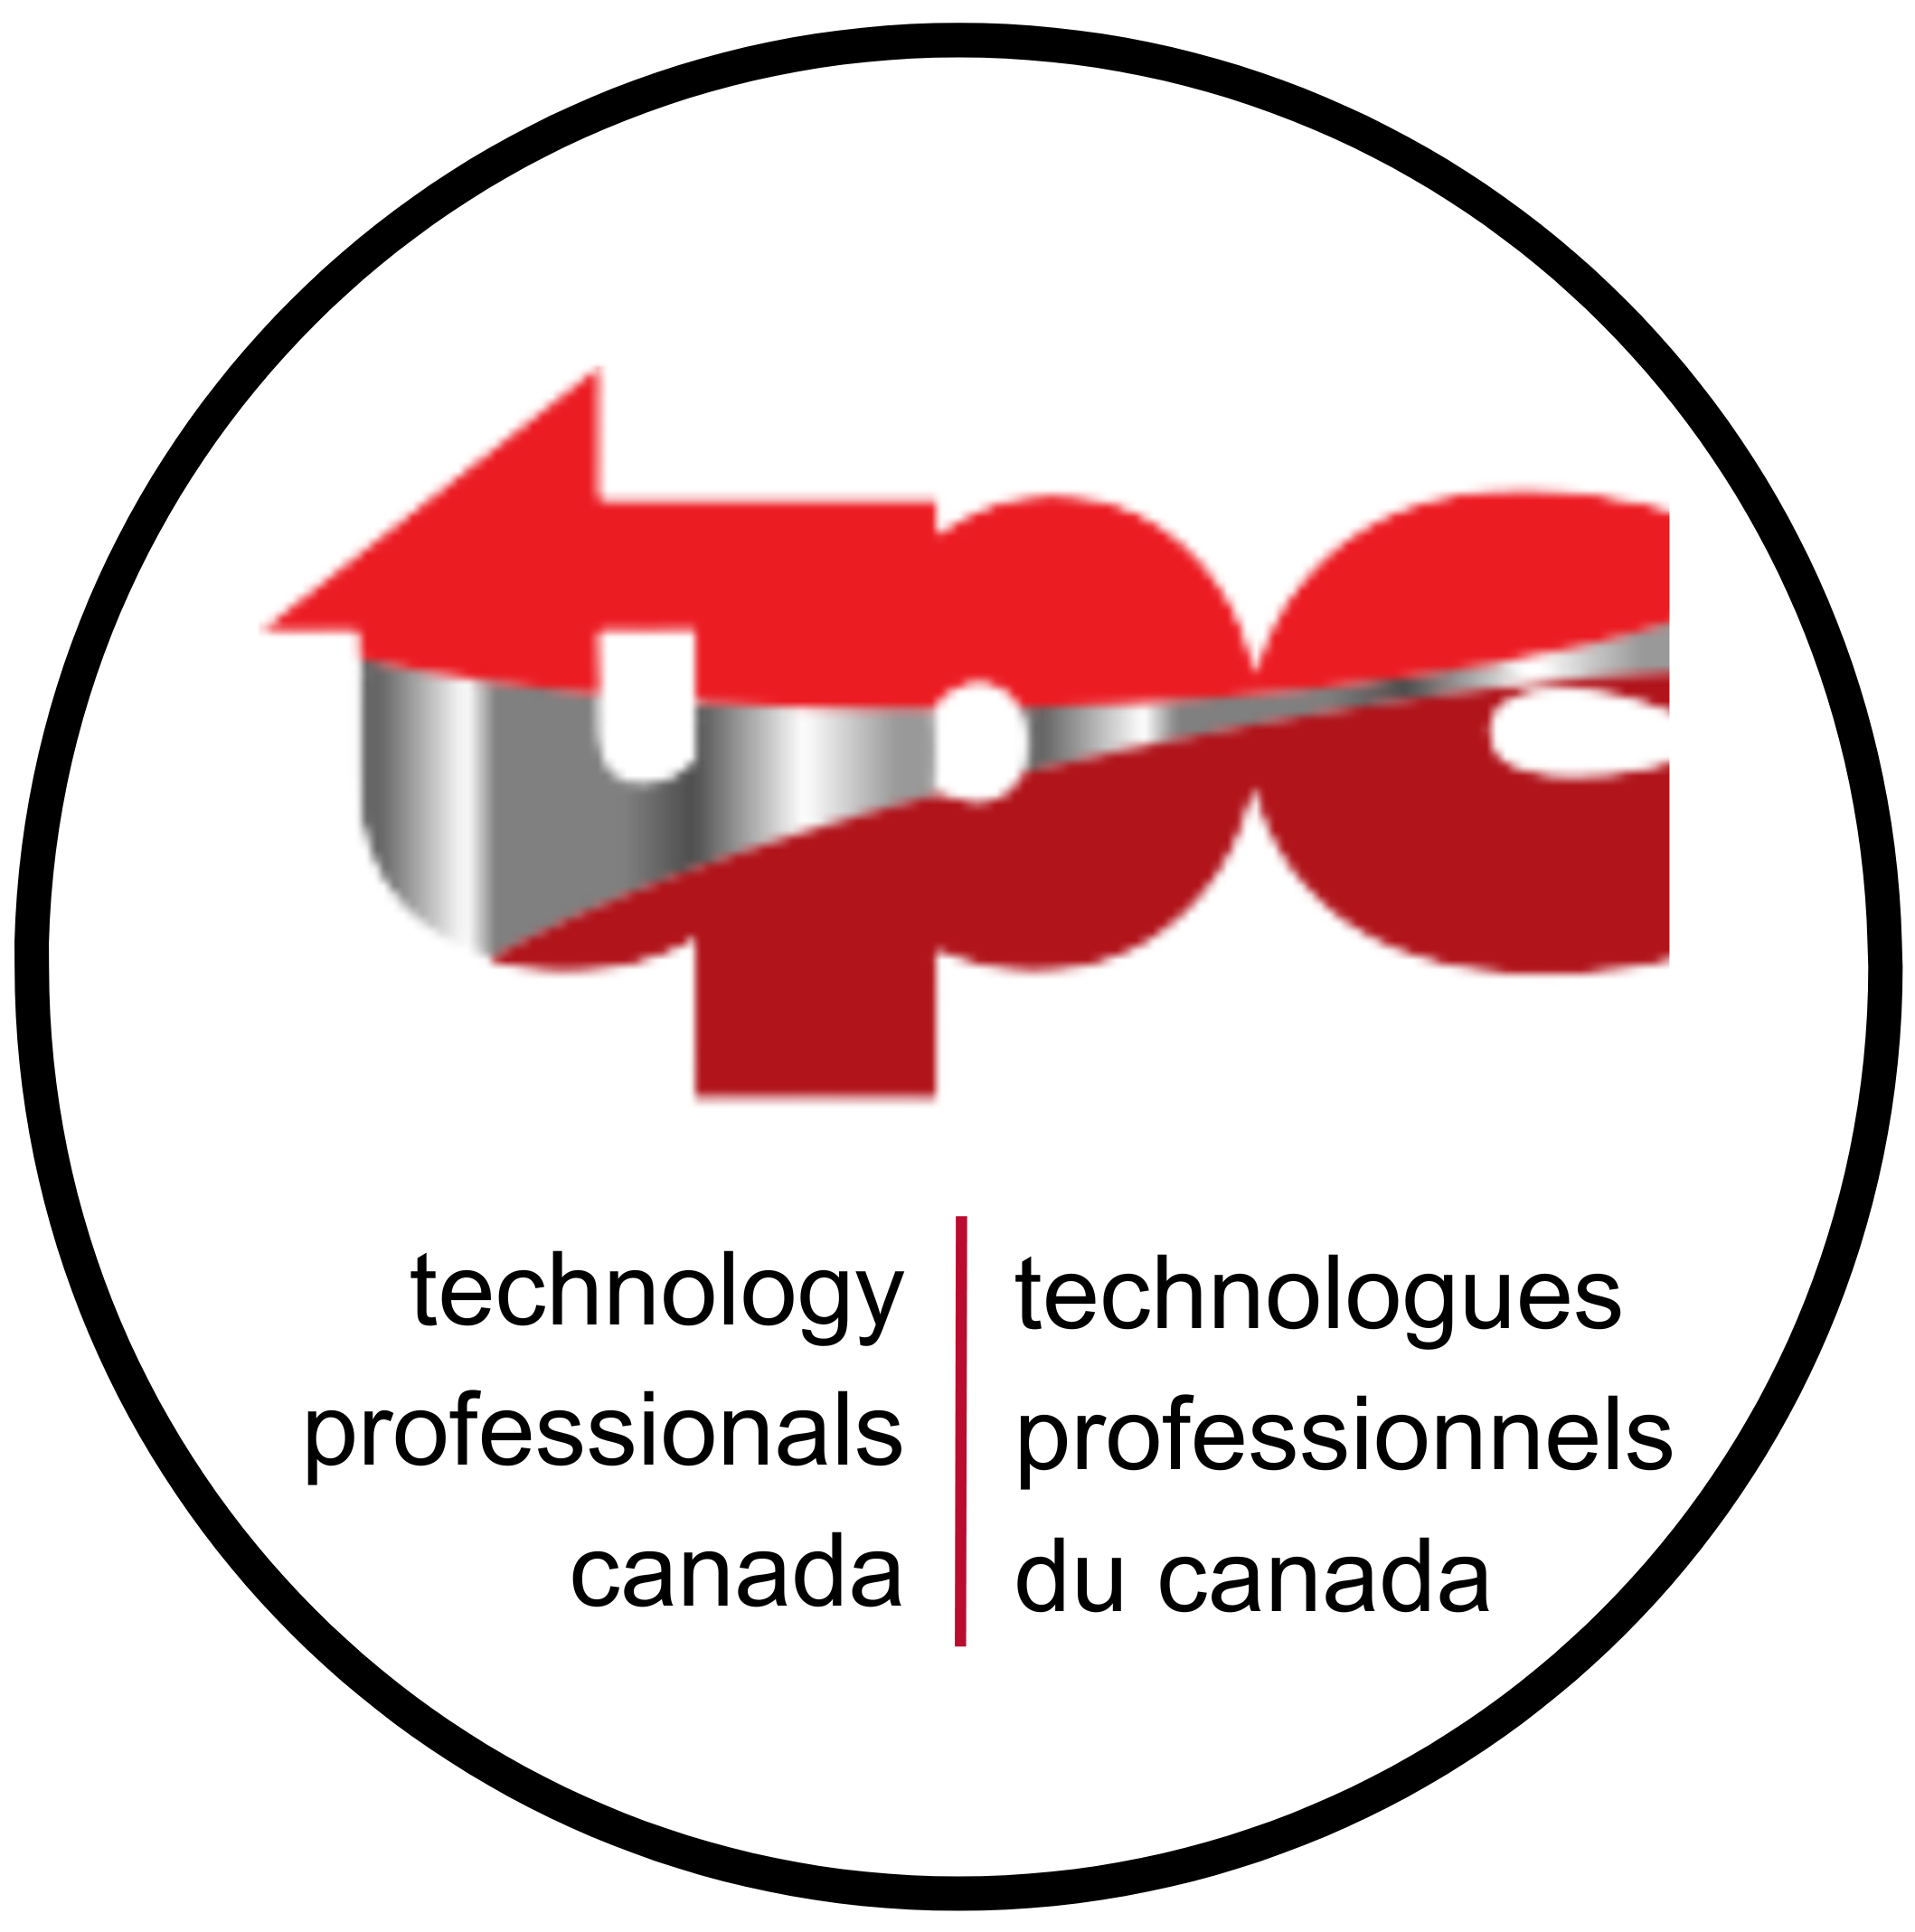 TPC, technology professionals canada, technologues professionels du canada